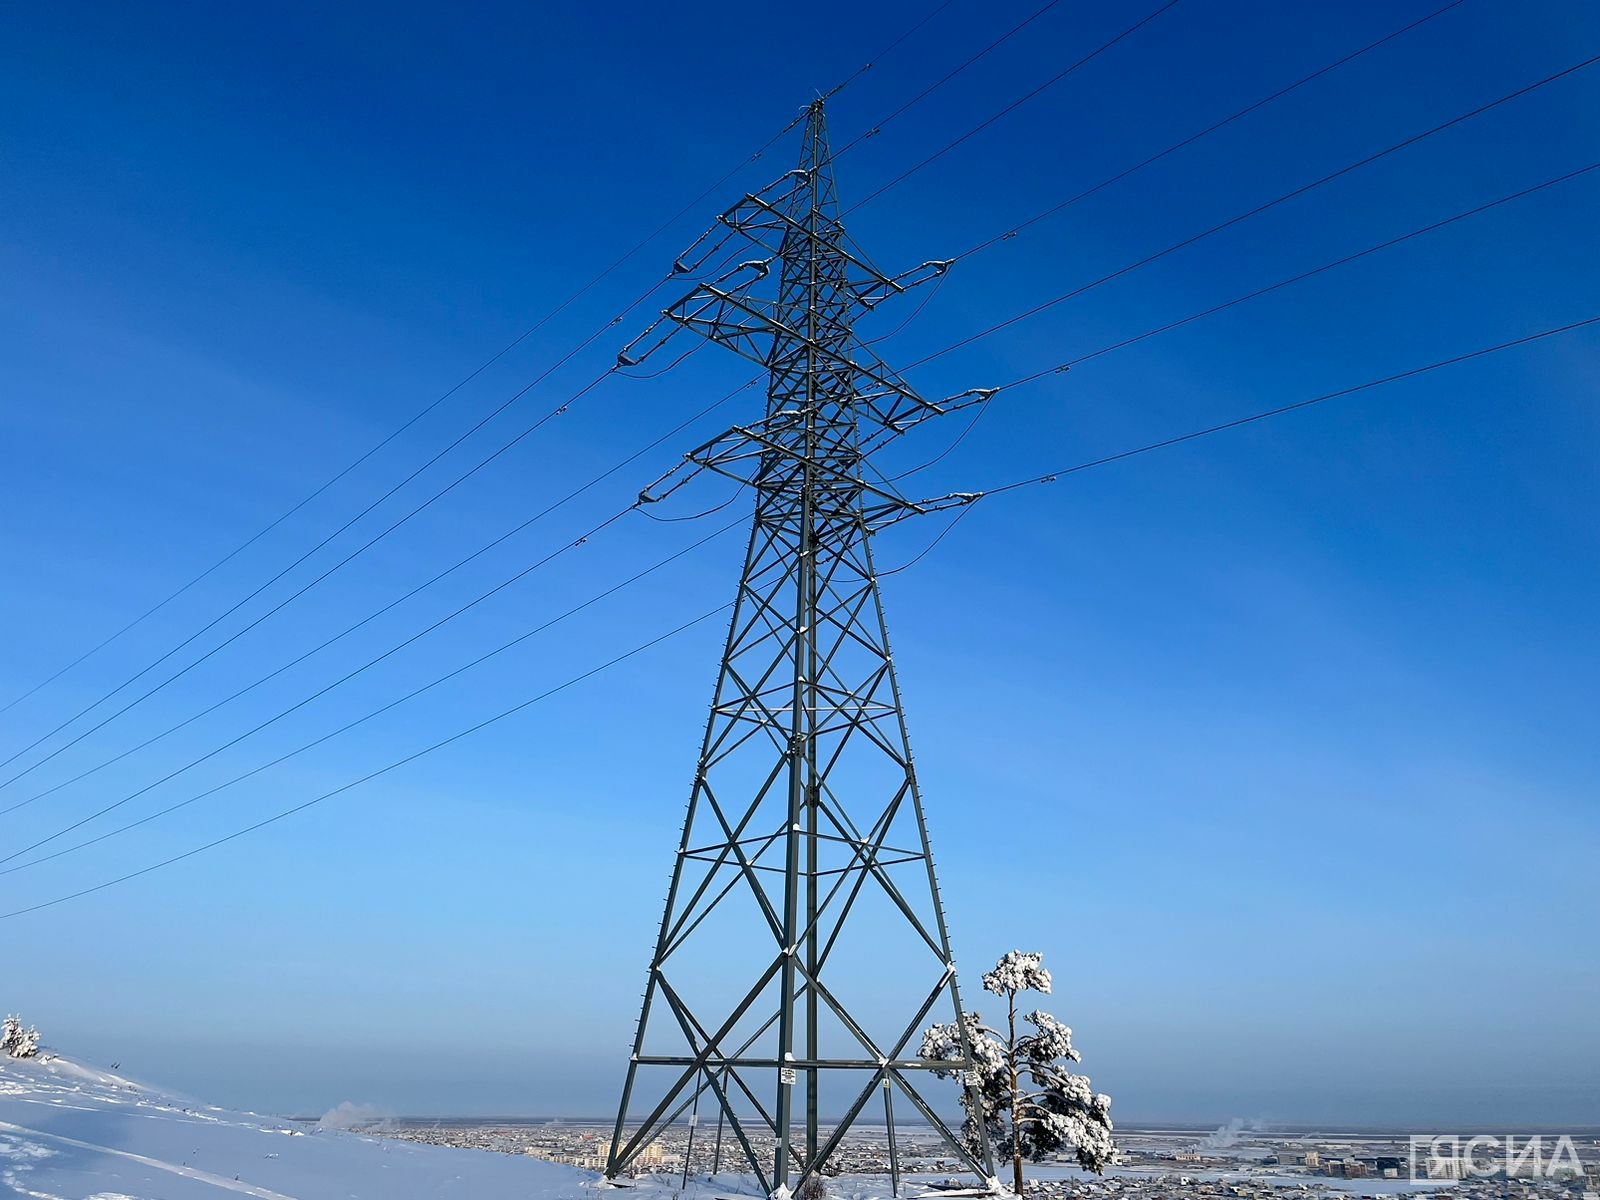 Адреса и график отключений энергоресурсов на 13 марта сообщили в ЕДДС Якутска